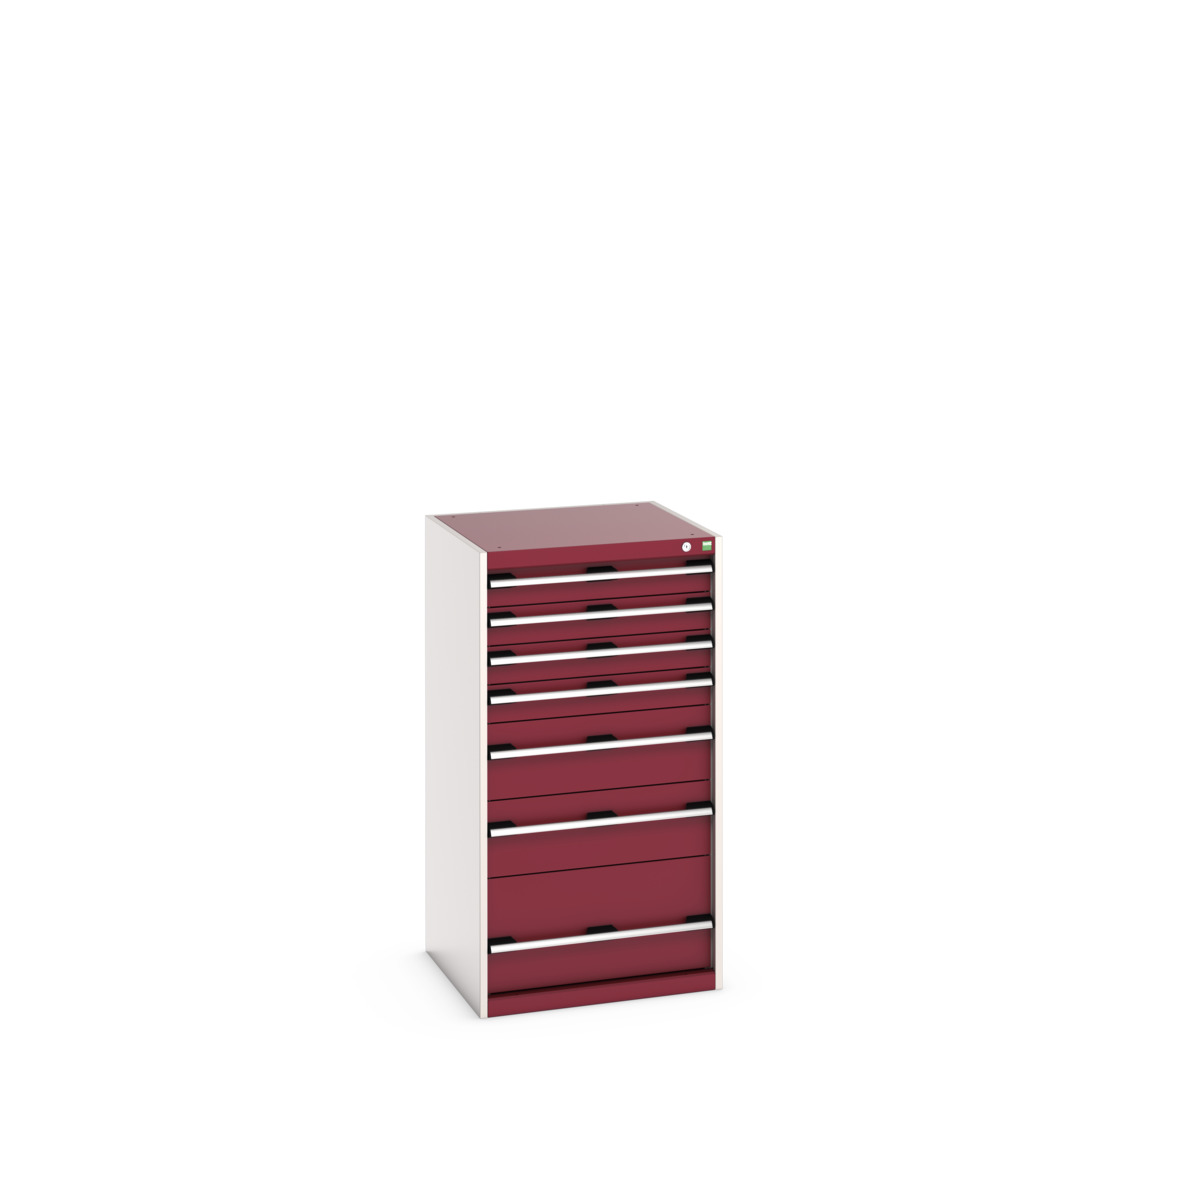 40019069.24V - cubio drawer cabinet